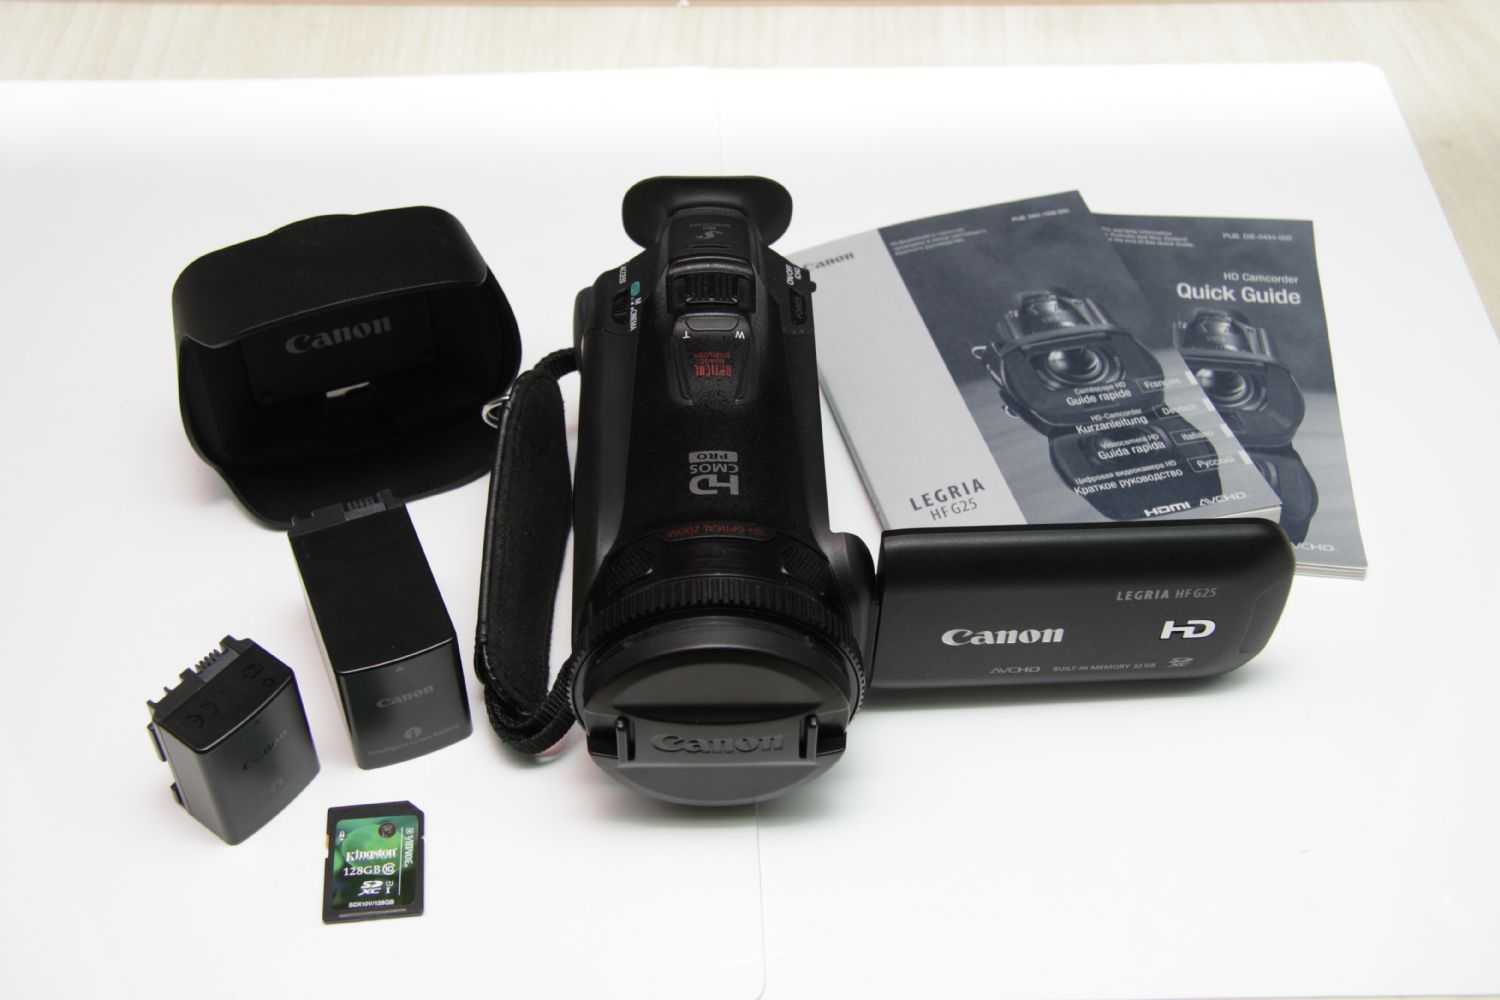 Видеокамера canon legria hf g25 — купить, цена и характеристики, отзывы